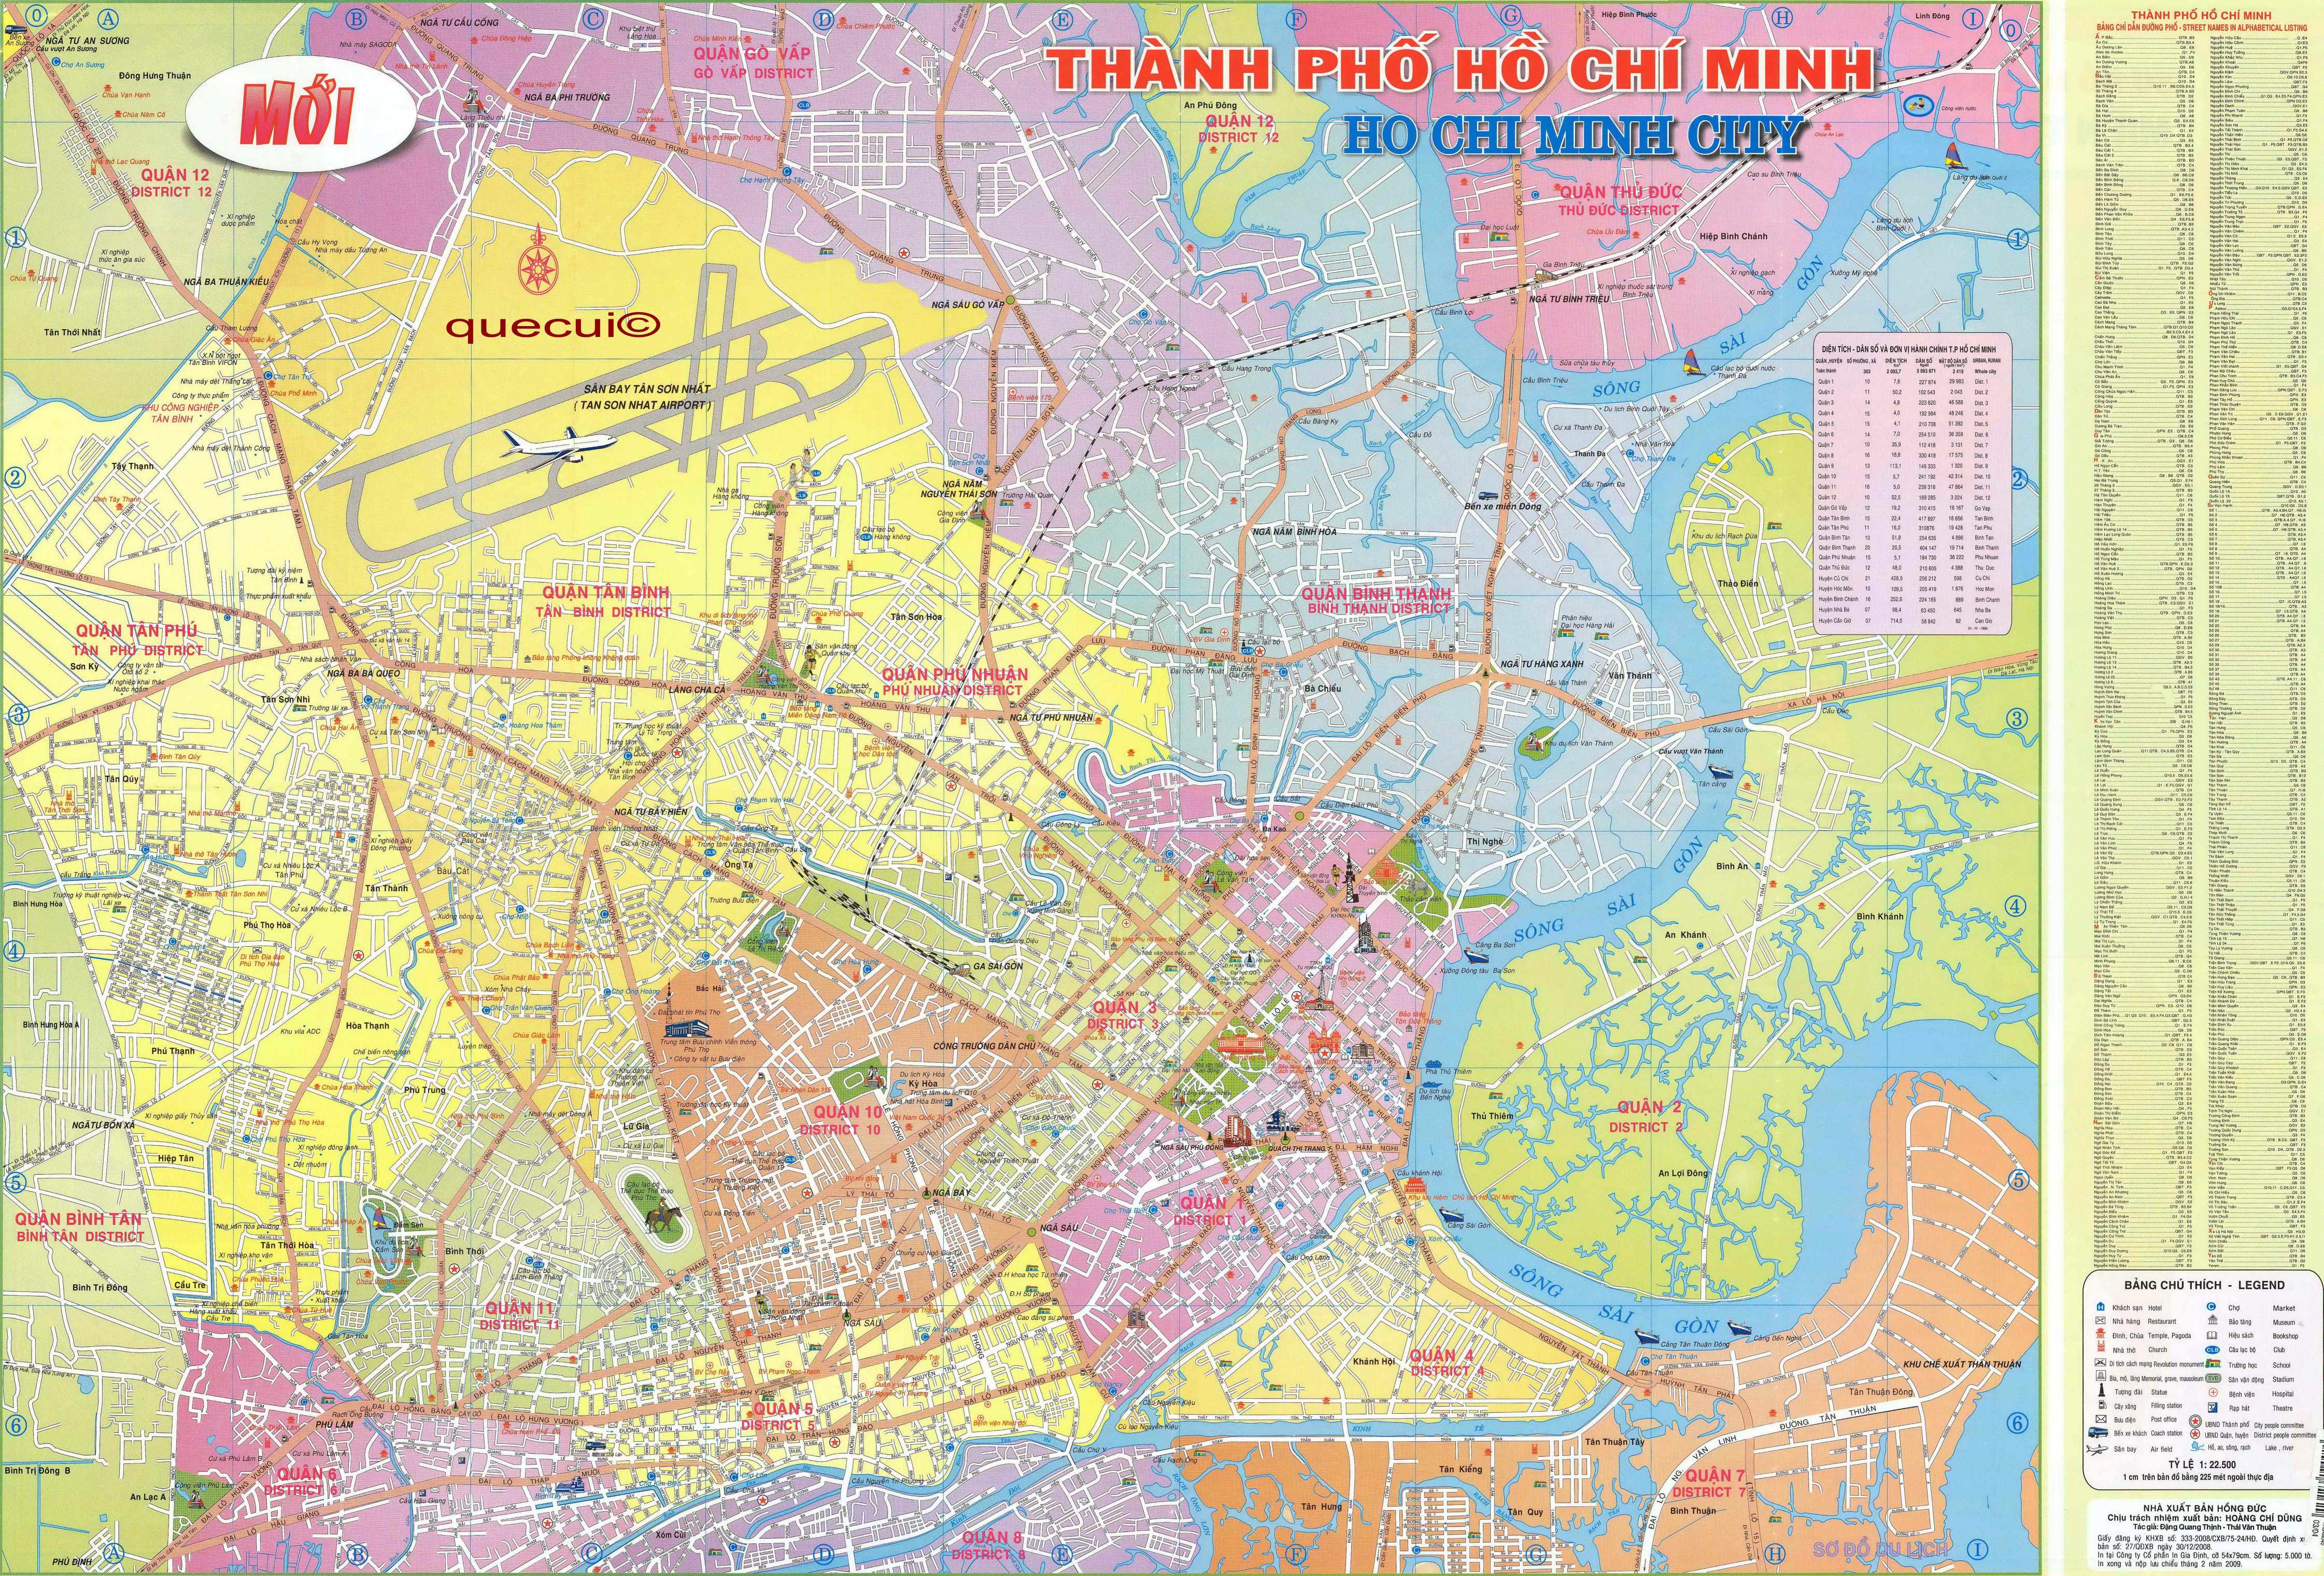 Bản đồ giao thông đô thị thành phố Hồ Chí Minh